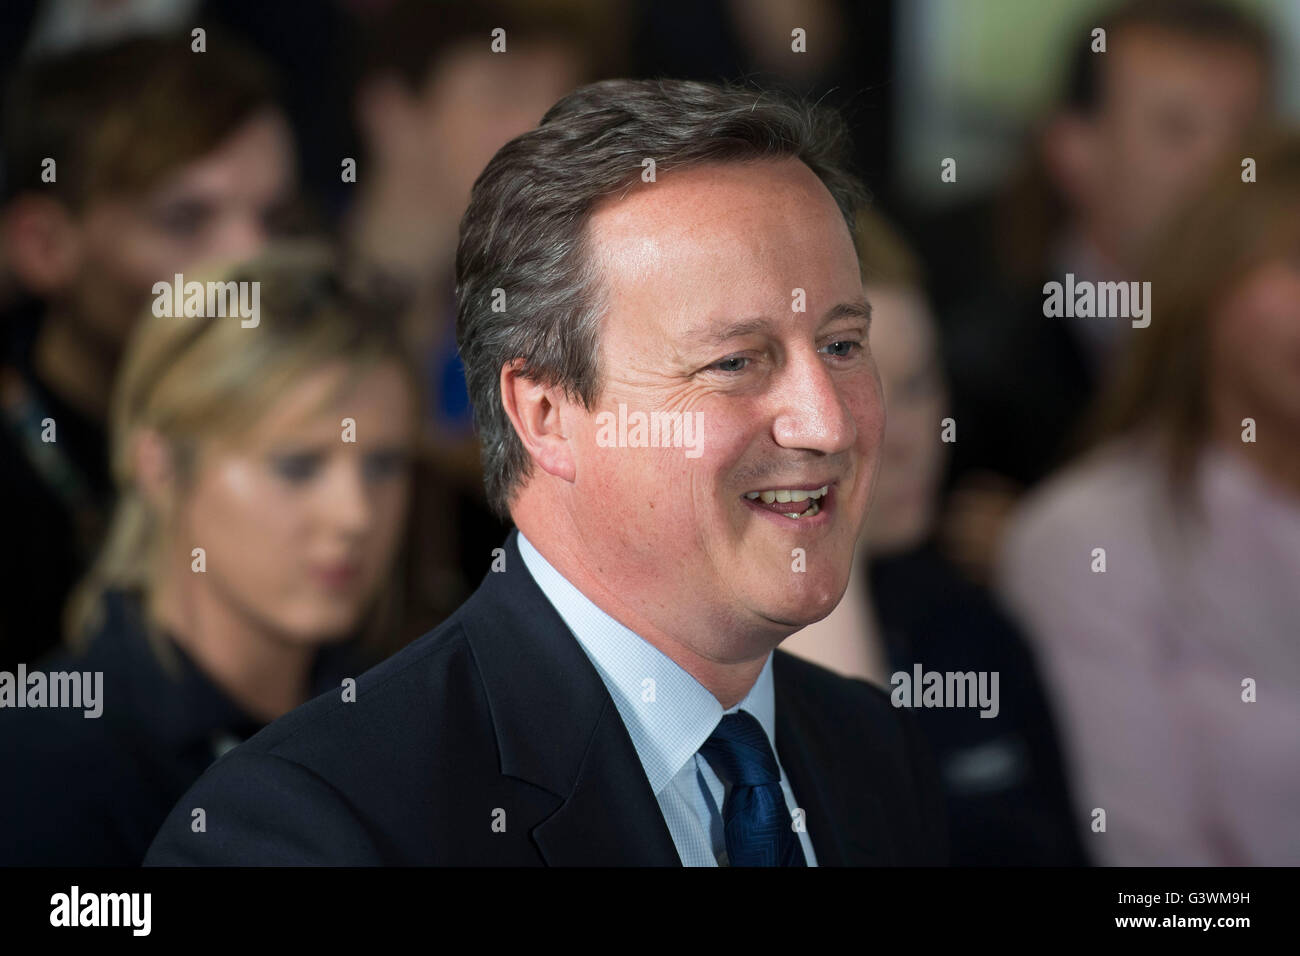 David Cameron Premierminister des Vereinigten Königreichs und konservative Parteichef spricht auf eine Debatte über die Europäische Union. Stockfoto